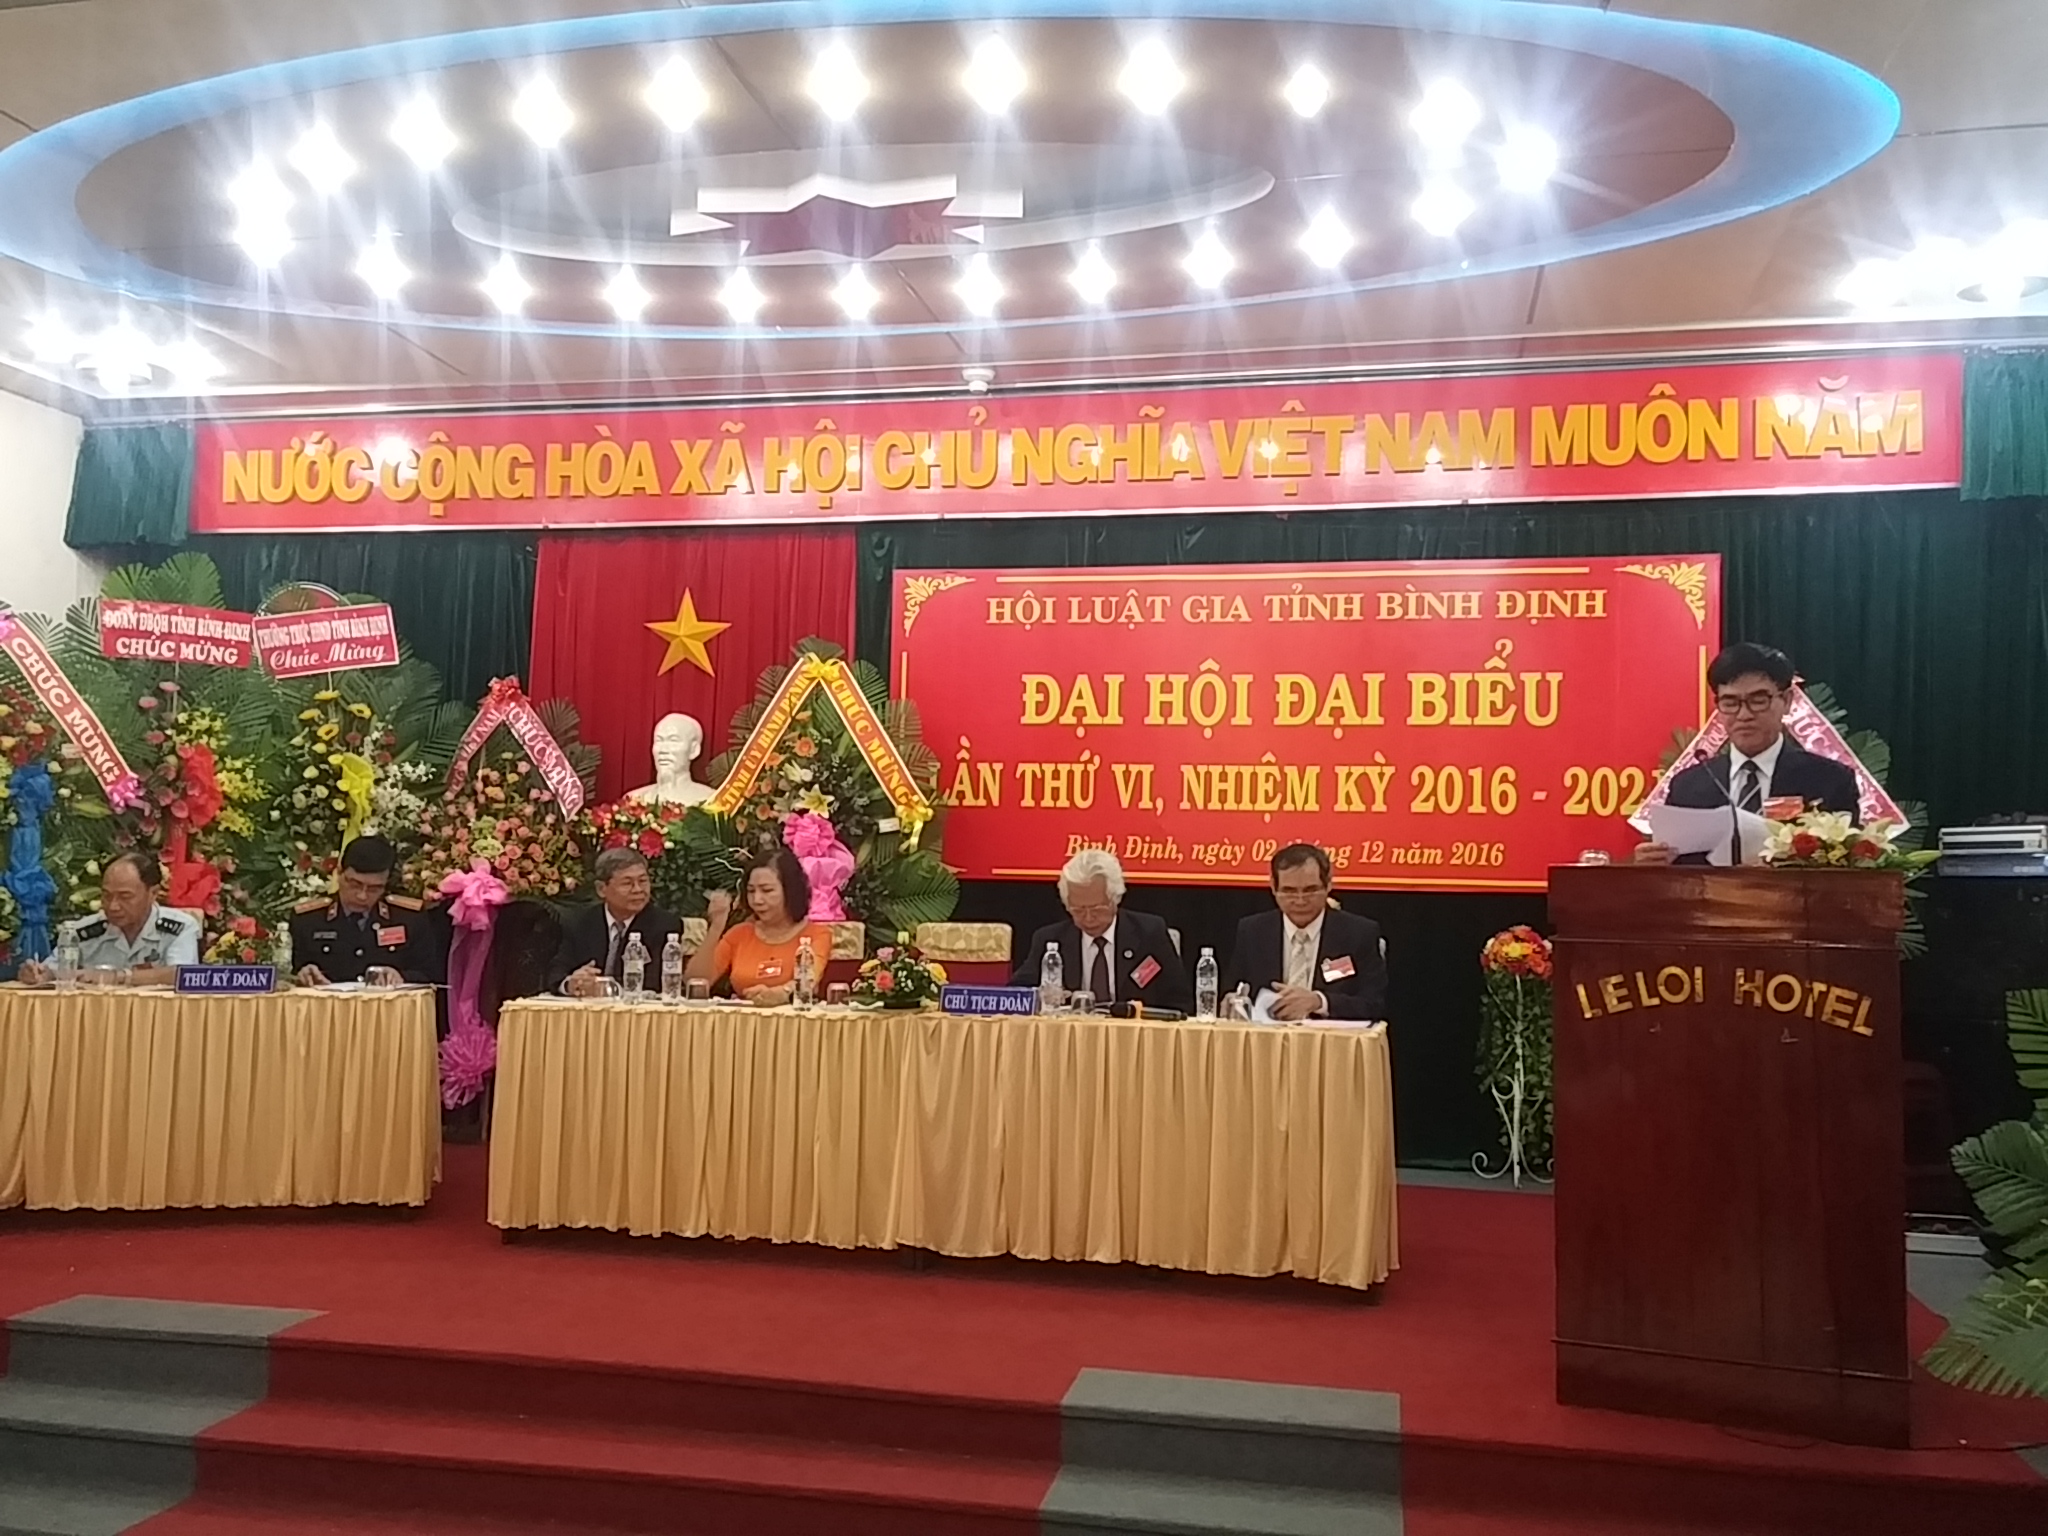 Đại hội Hội Luật gia tỉnh Bình Định lần thứ VI nhiệm kỳ 2016 - 2021